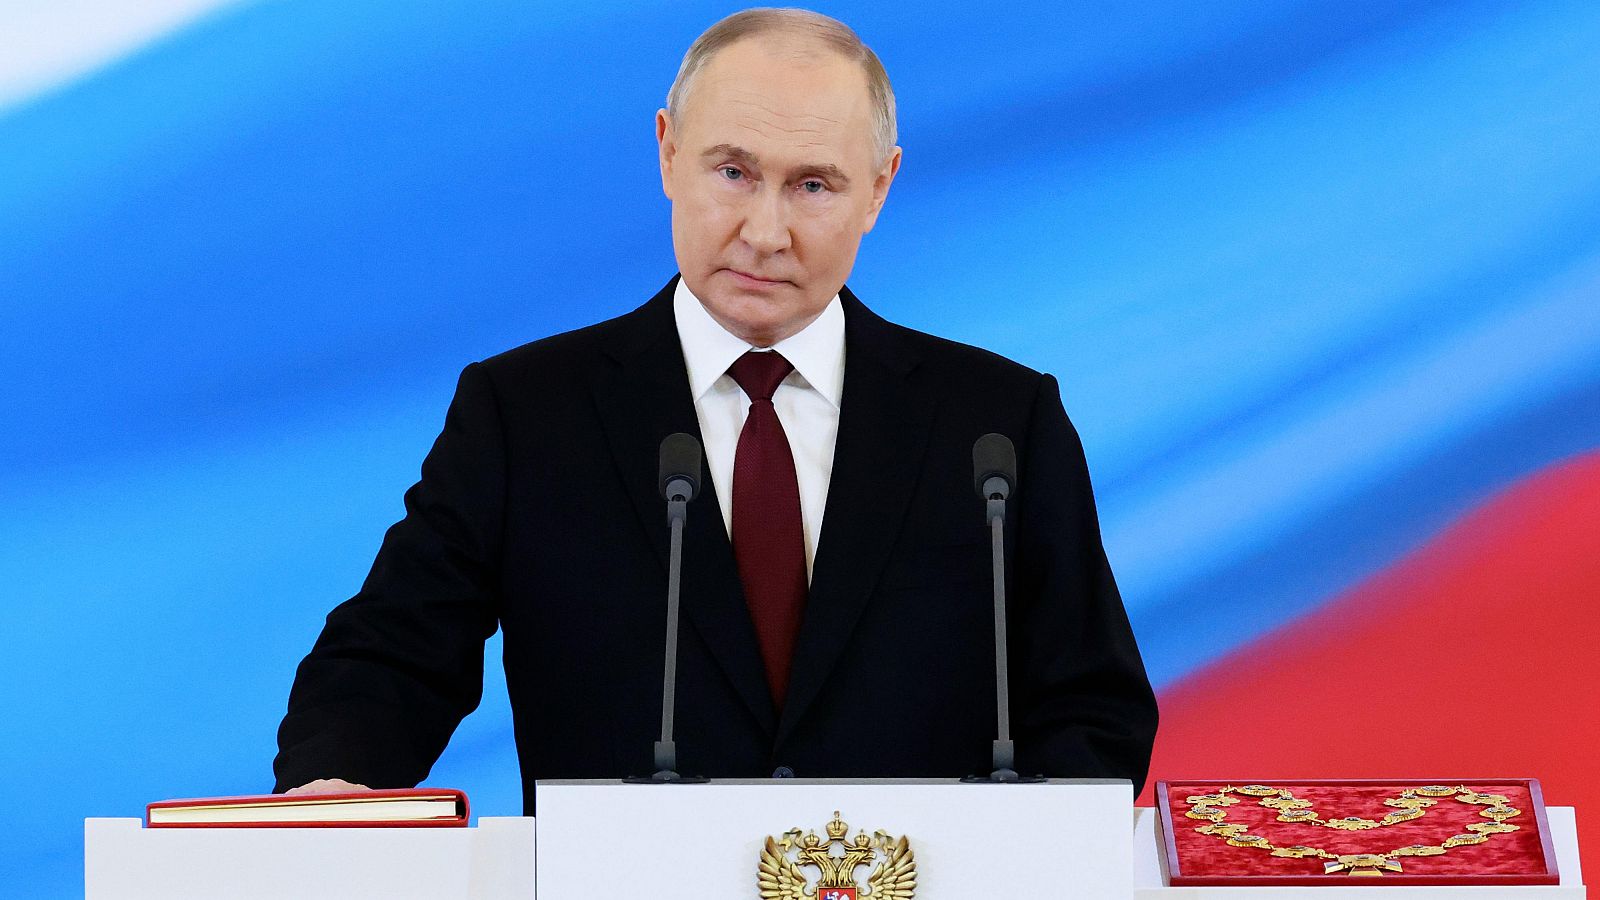 Putin es investido presidente de Rusia: "Somos un pueblo nico, juntos, venceremos"